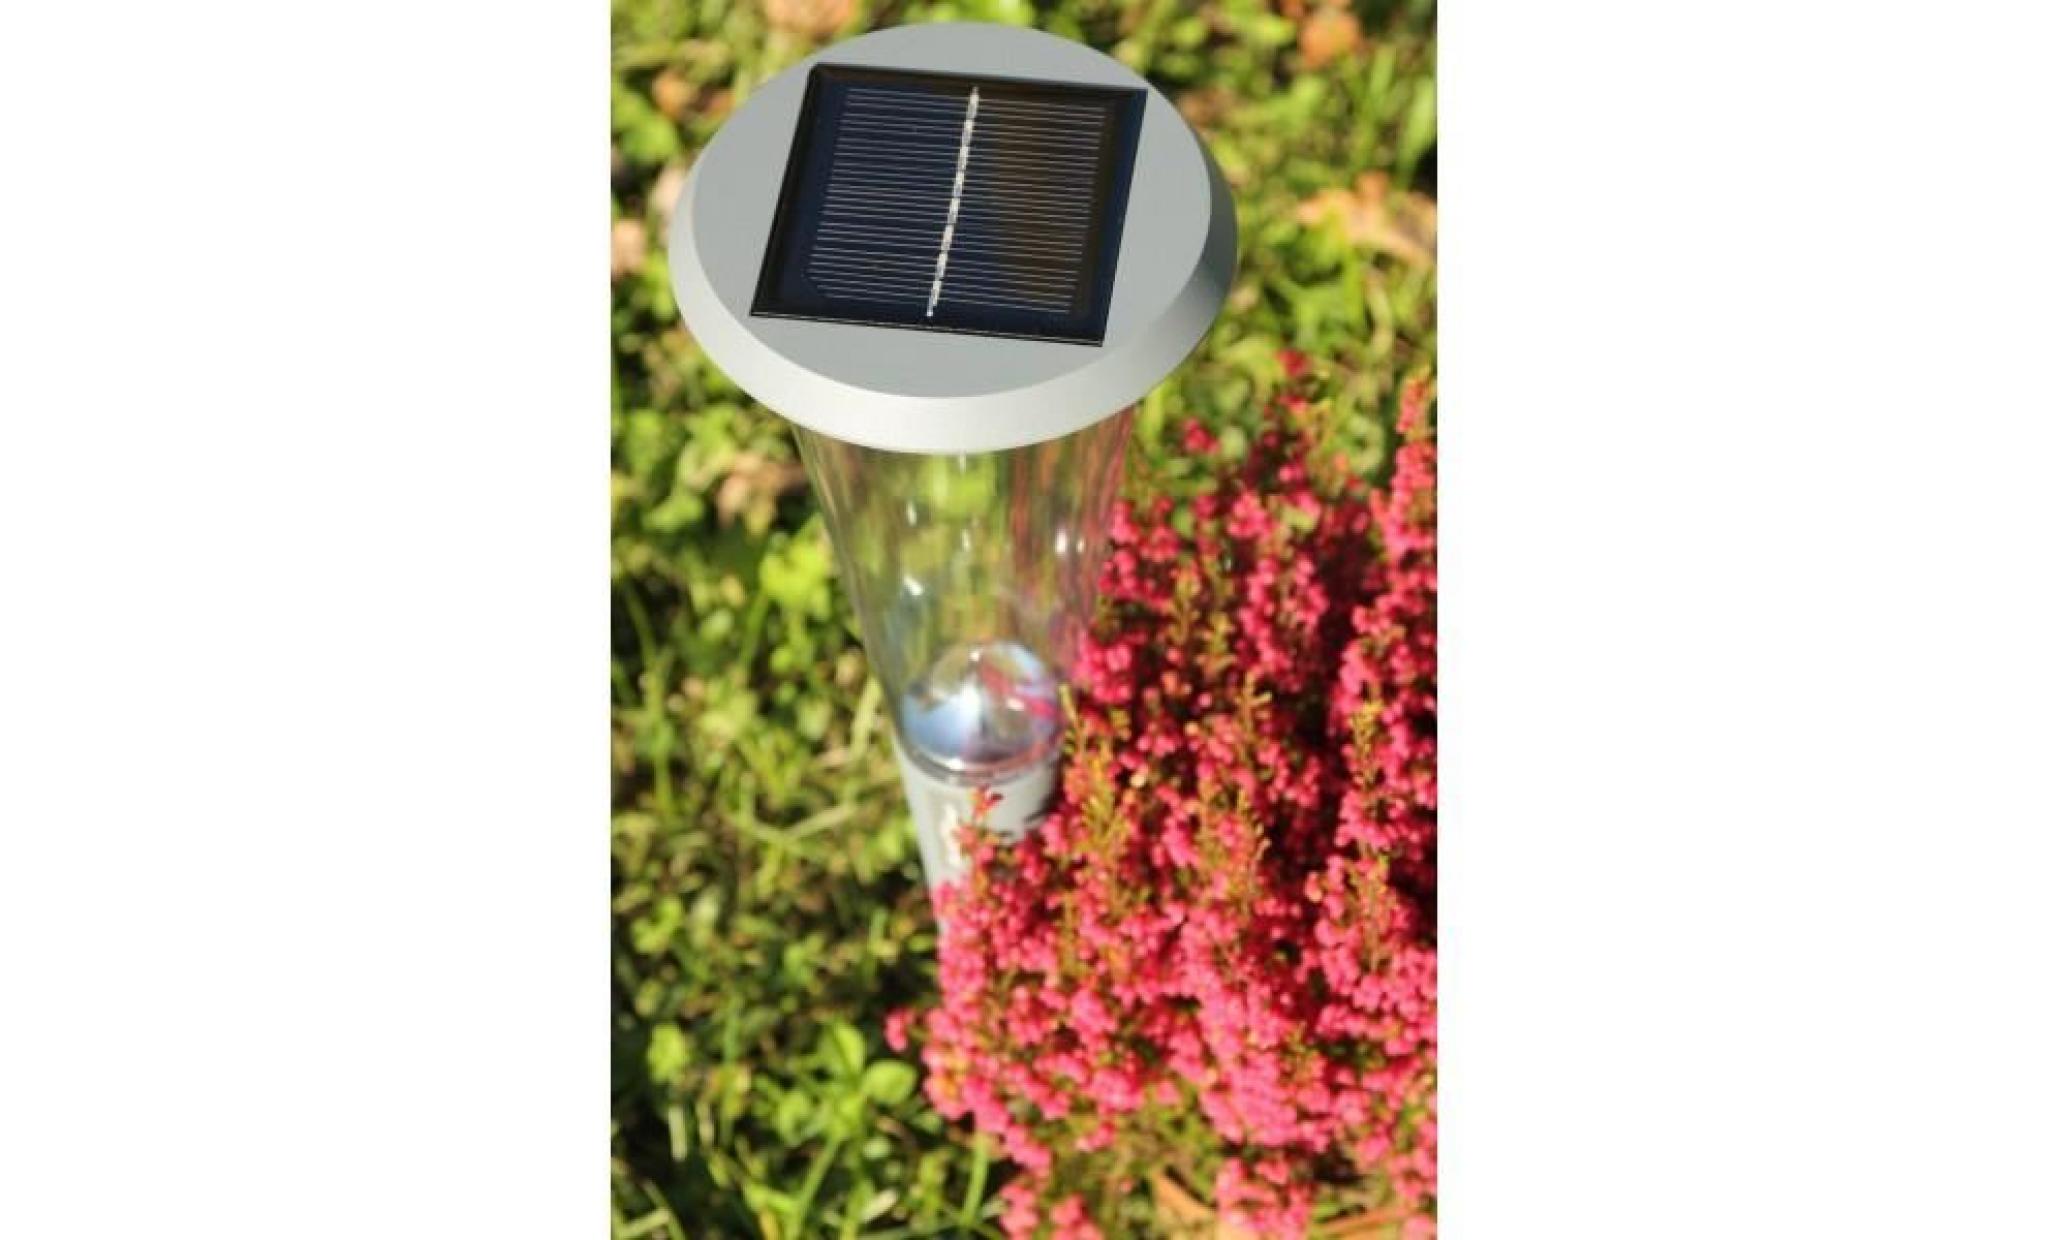 borne solaire candela solaire courte pour jardin pas cher